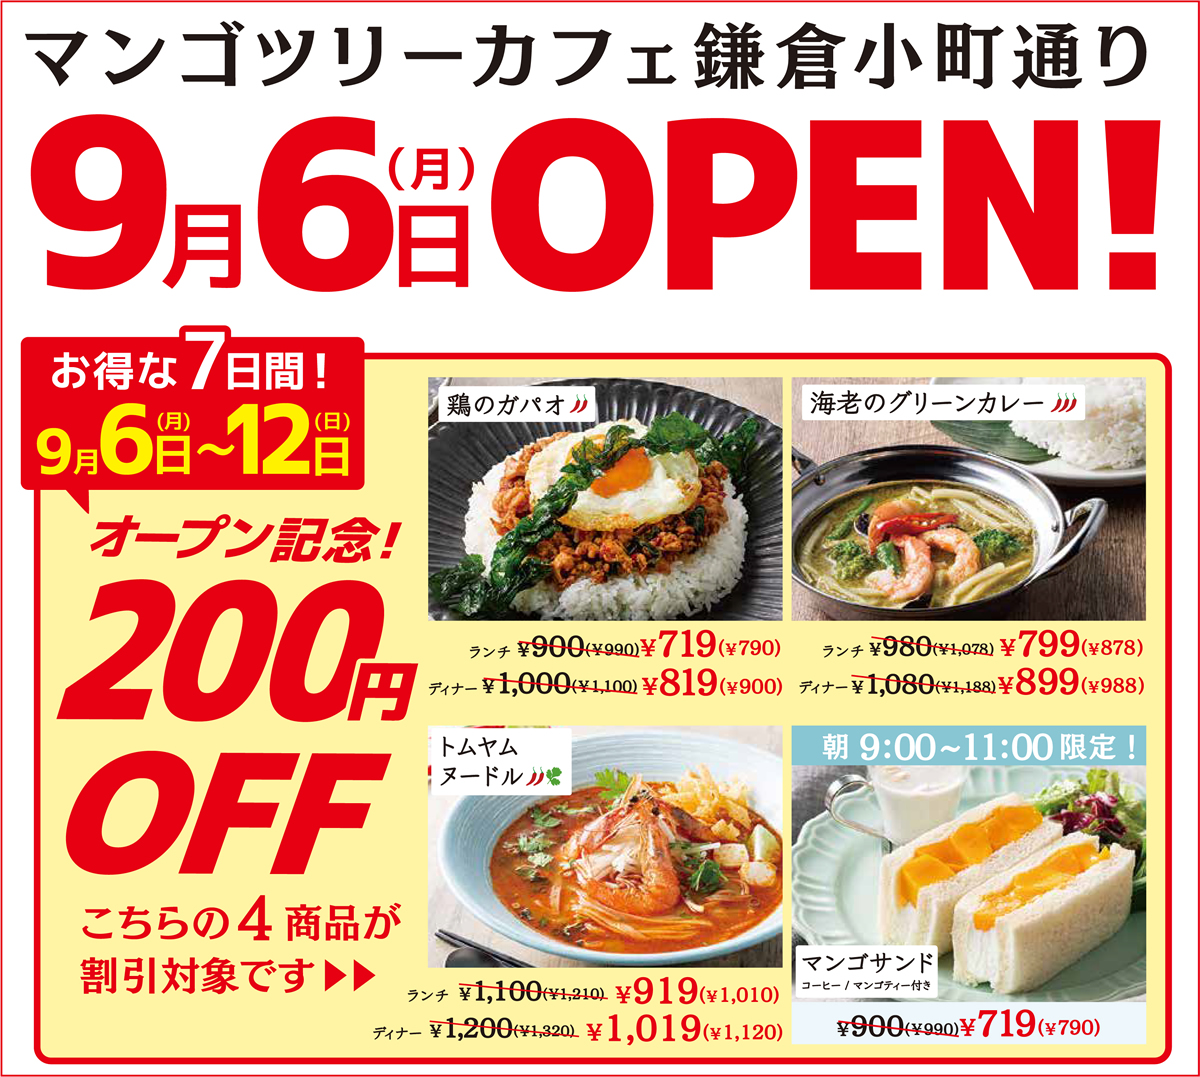 鎌倉にタイ料理レストラン「マンゴツリーカフェ」オープン